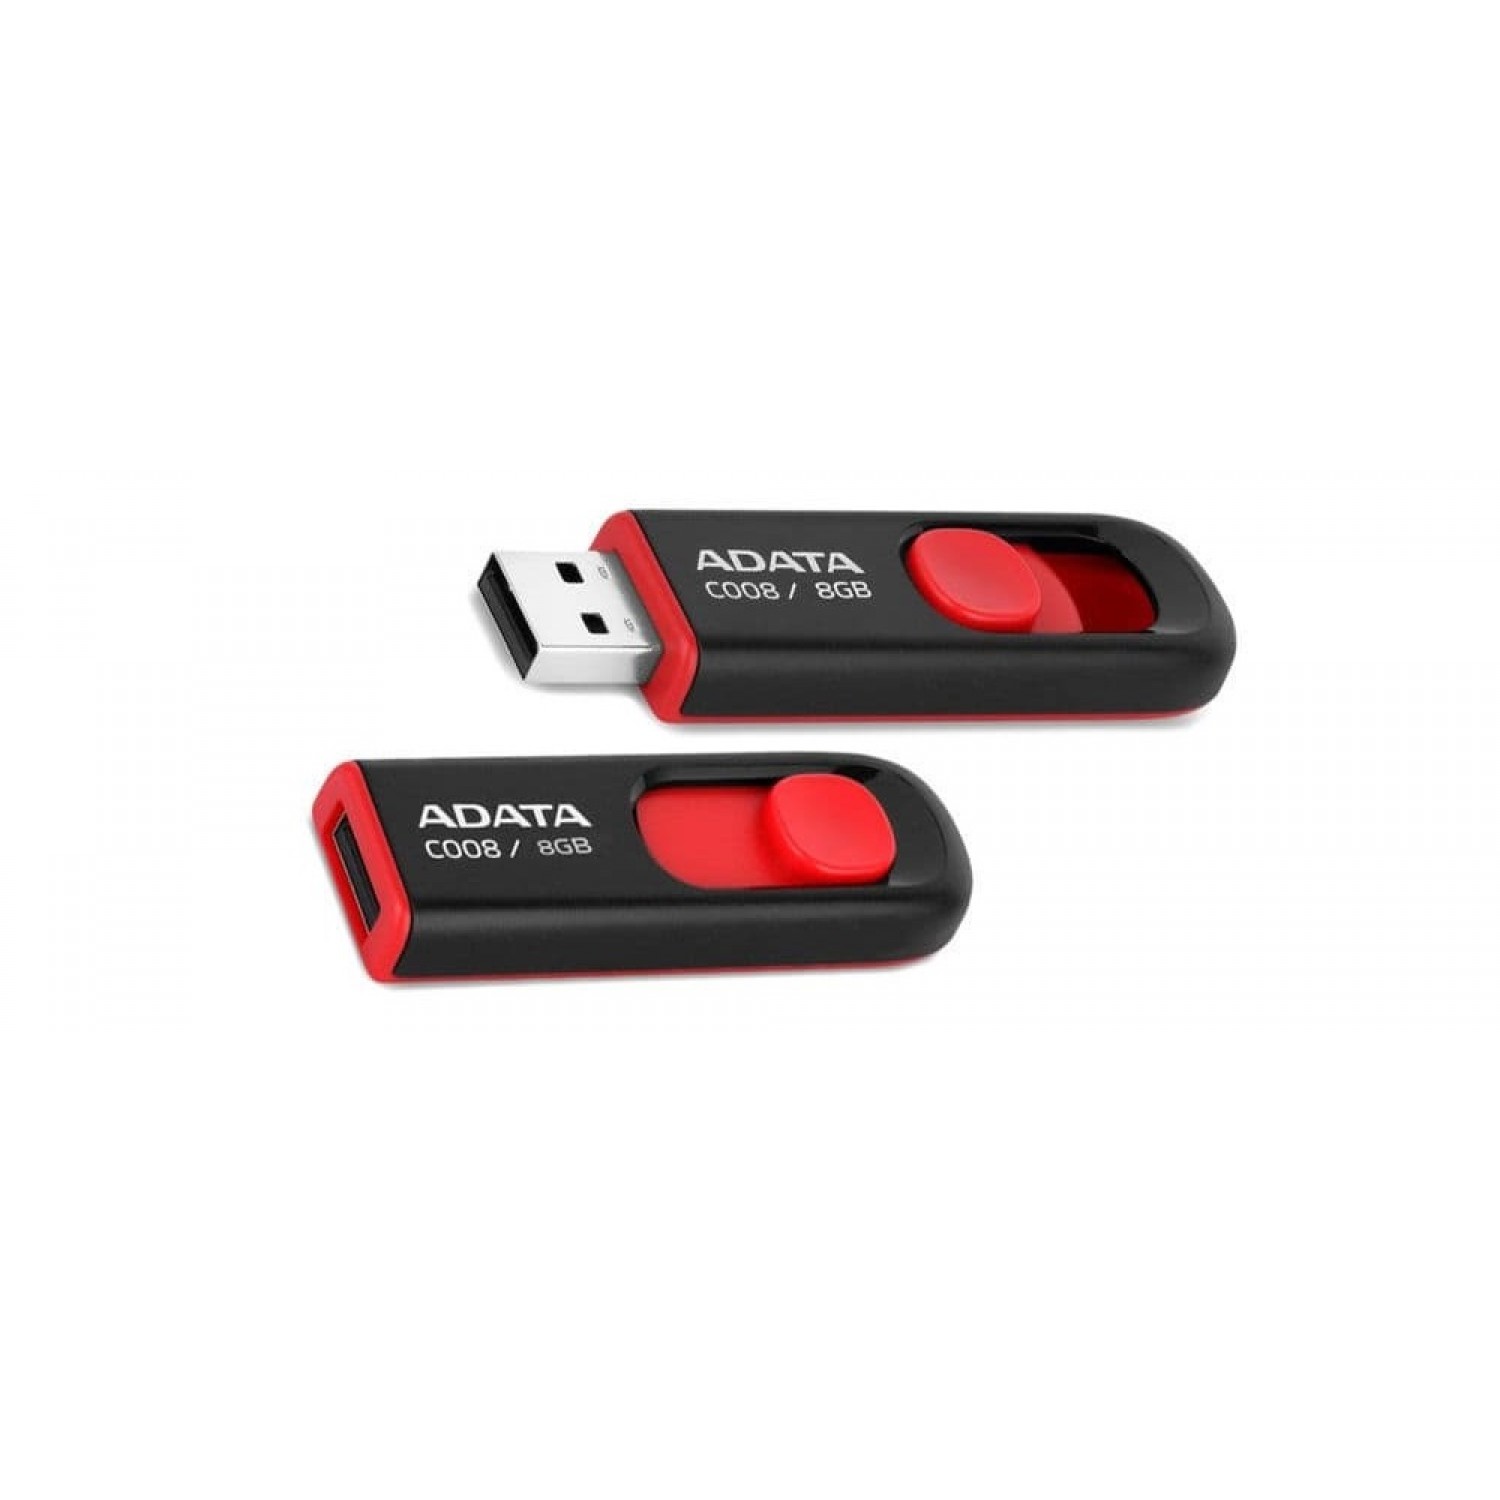 فلش مموری ADATA C008 - 8GB - Black/Red-2